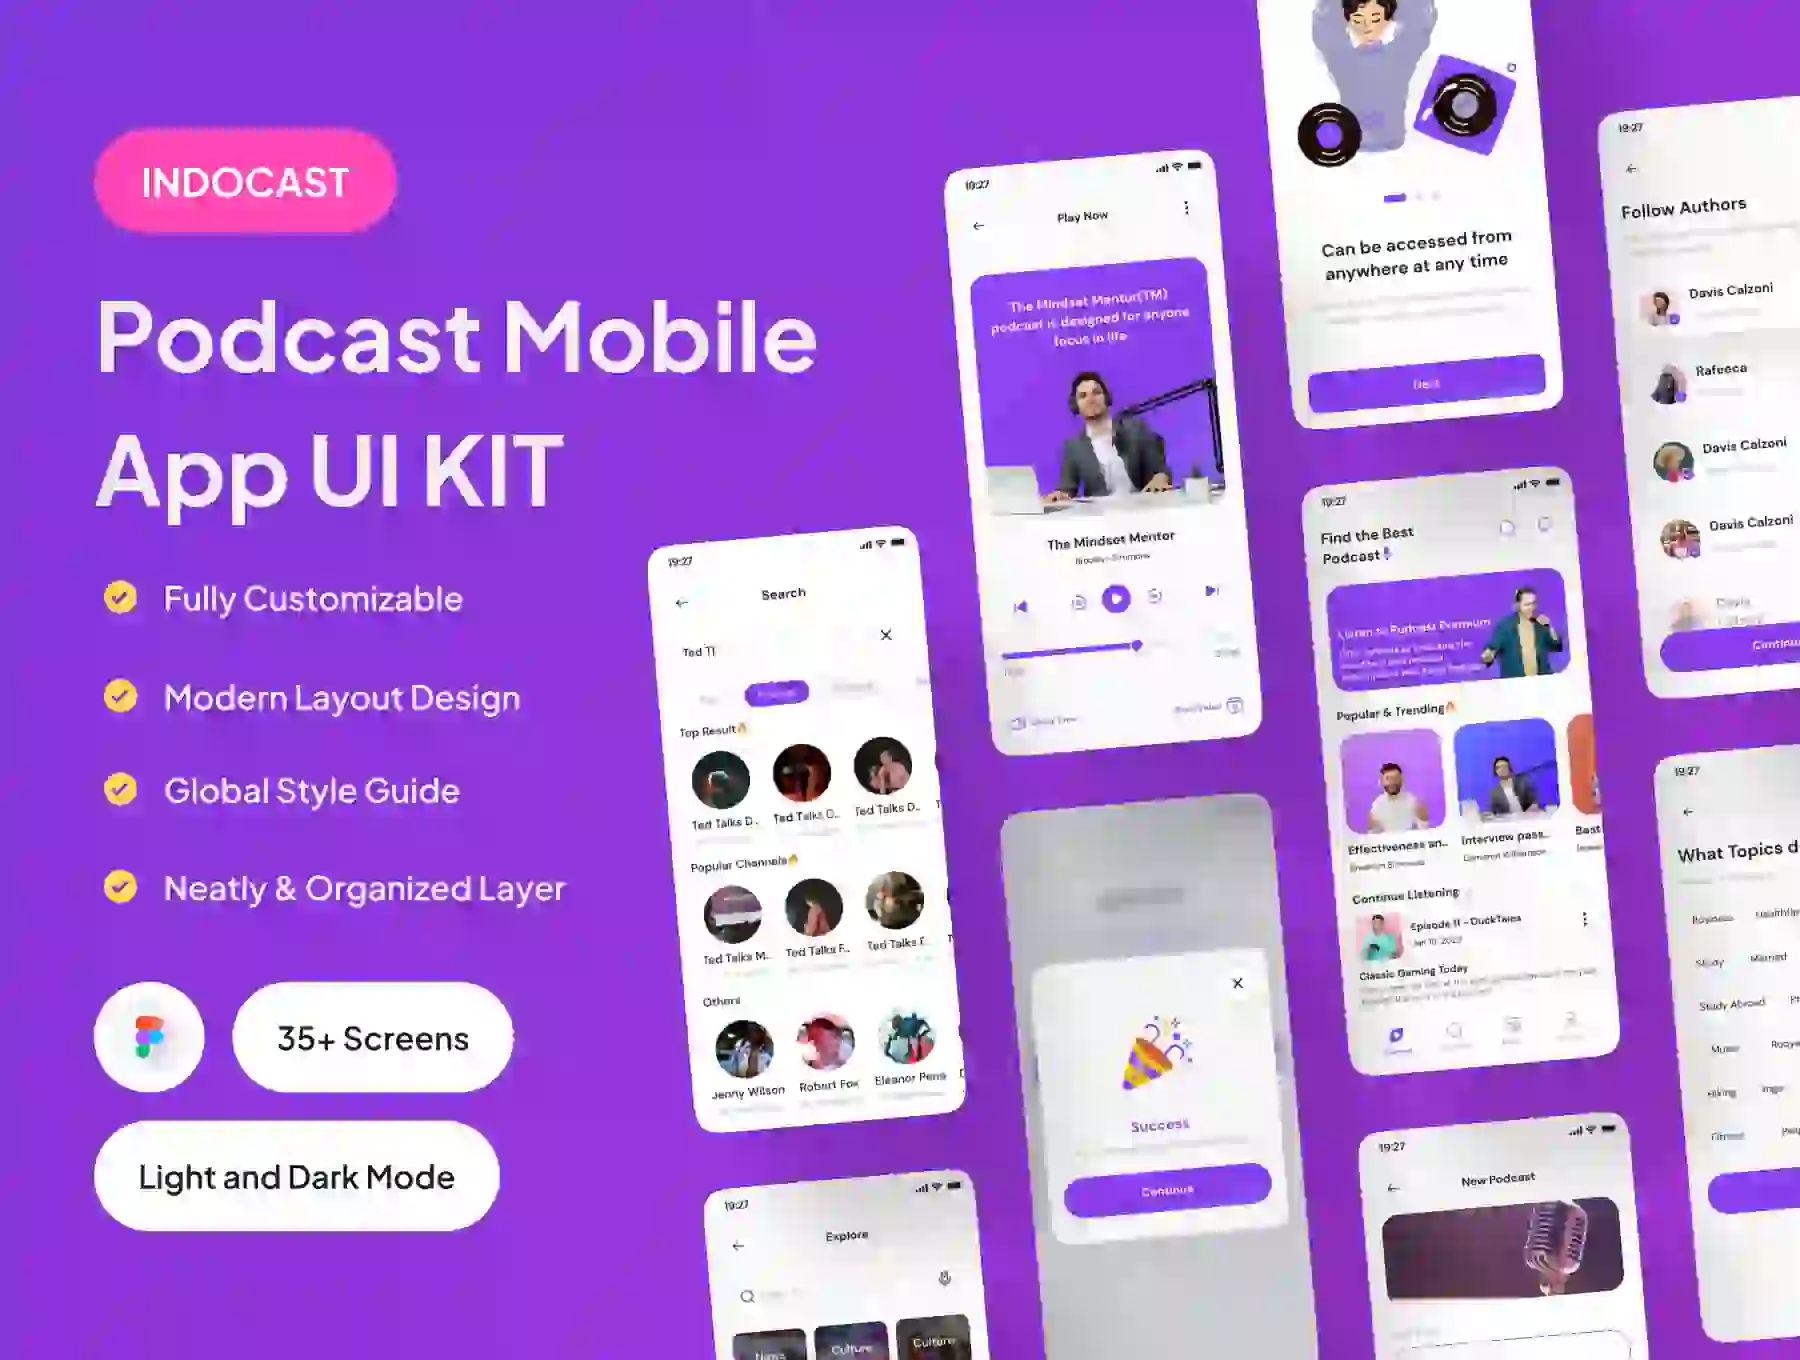 INDOCAST - Podcast Mobile App UI Kit